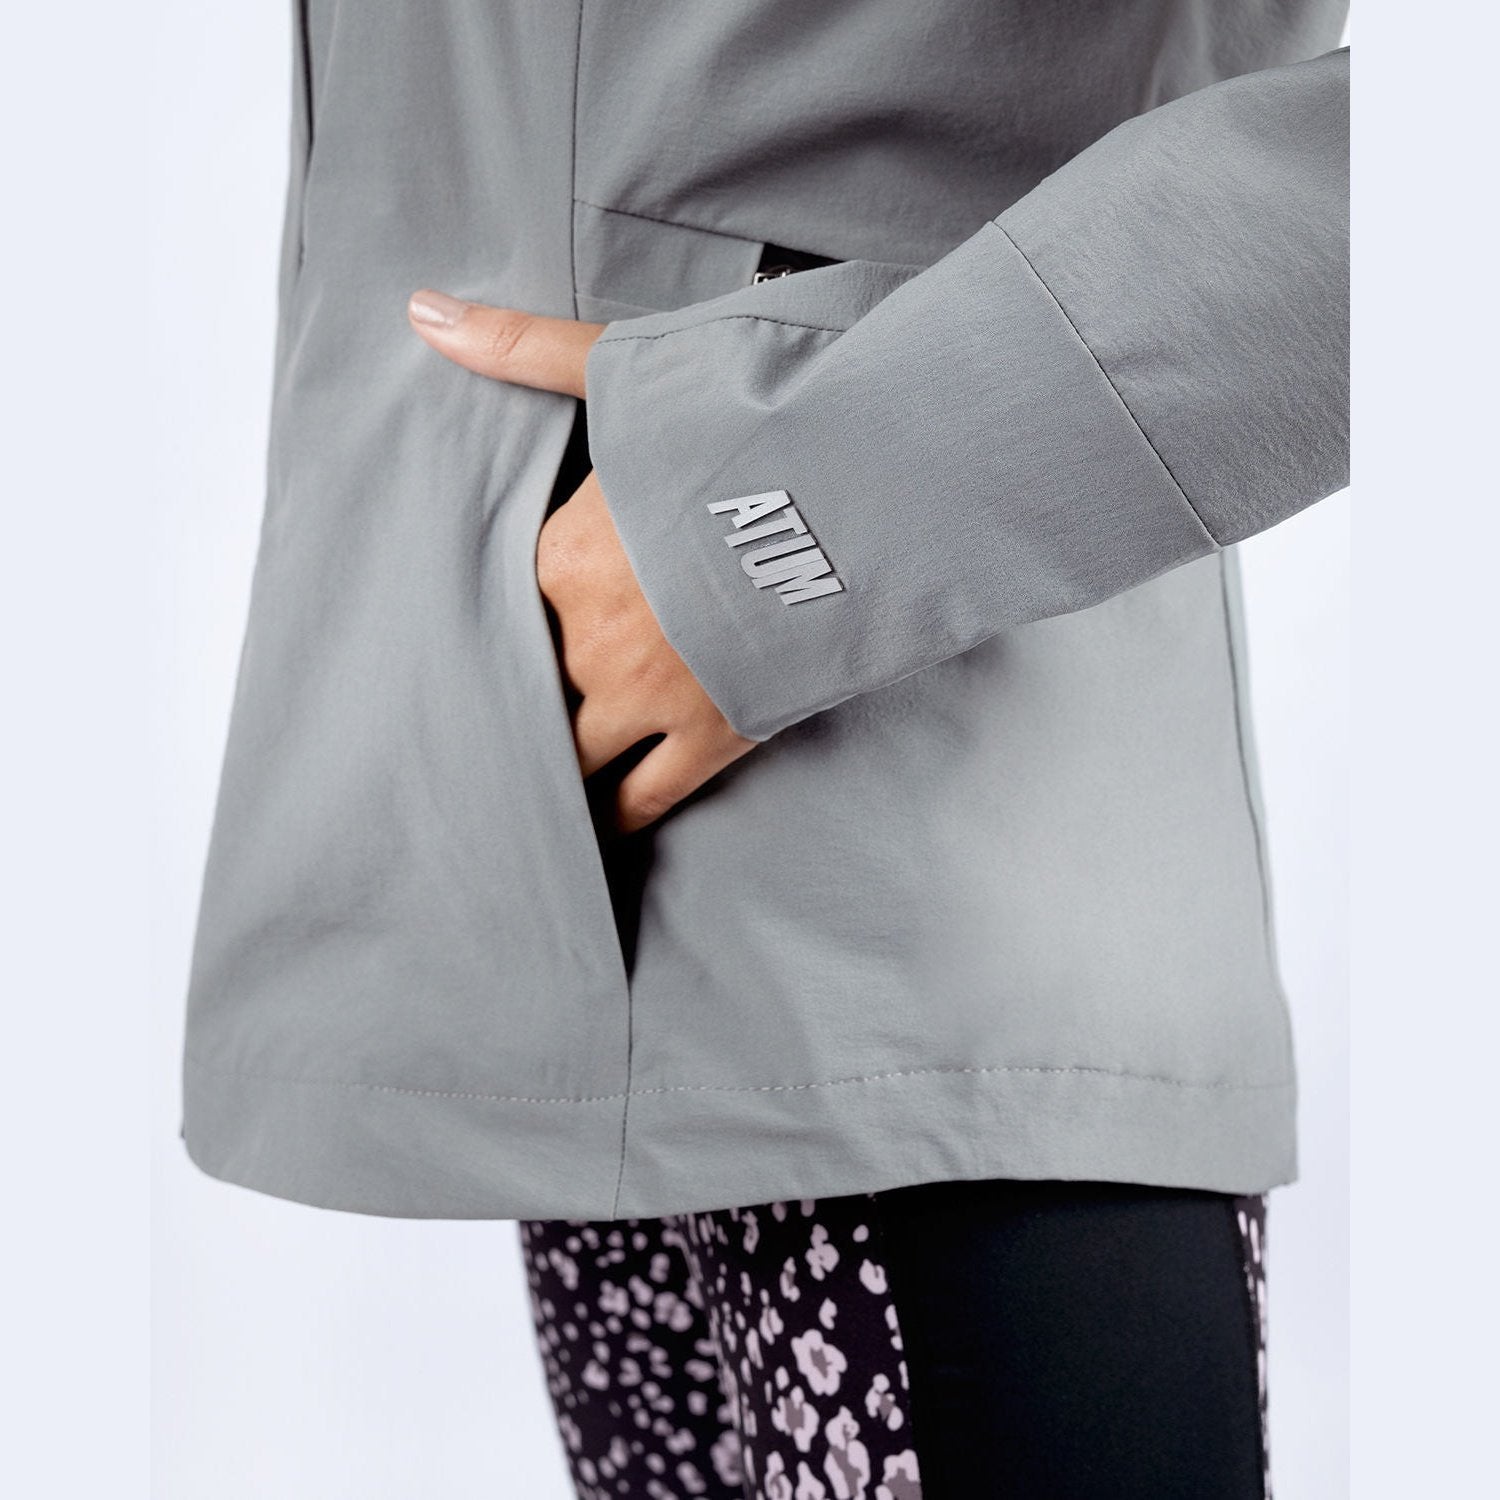 Atum women's basic jacket